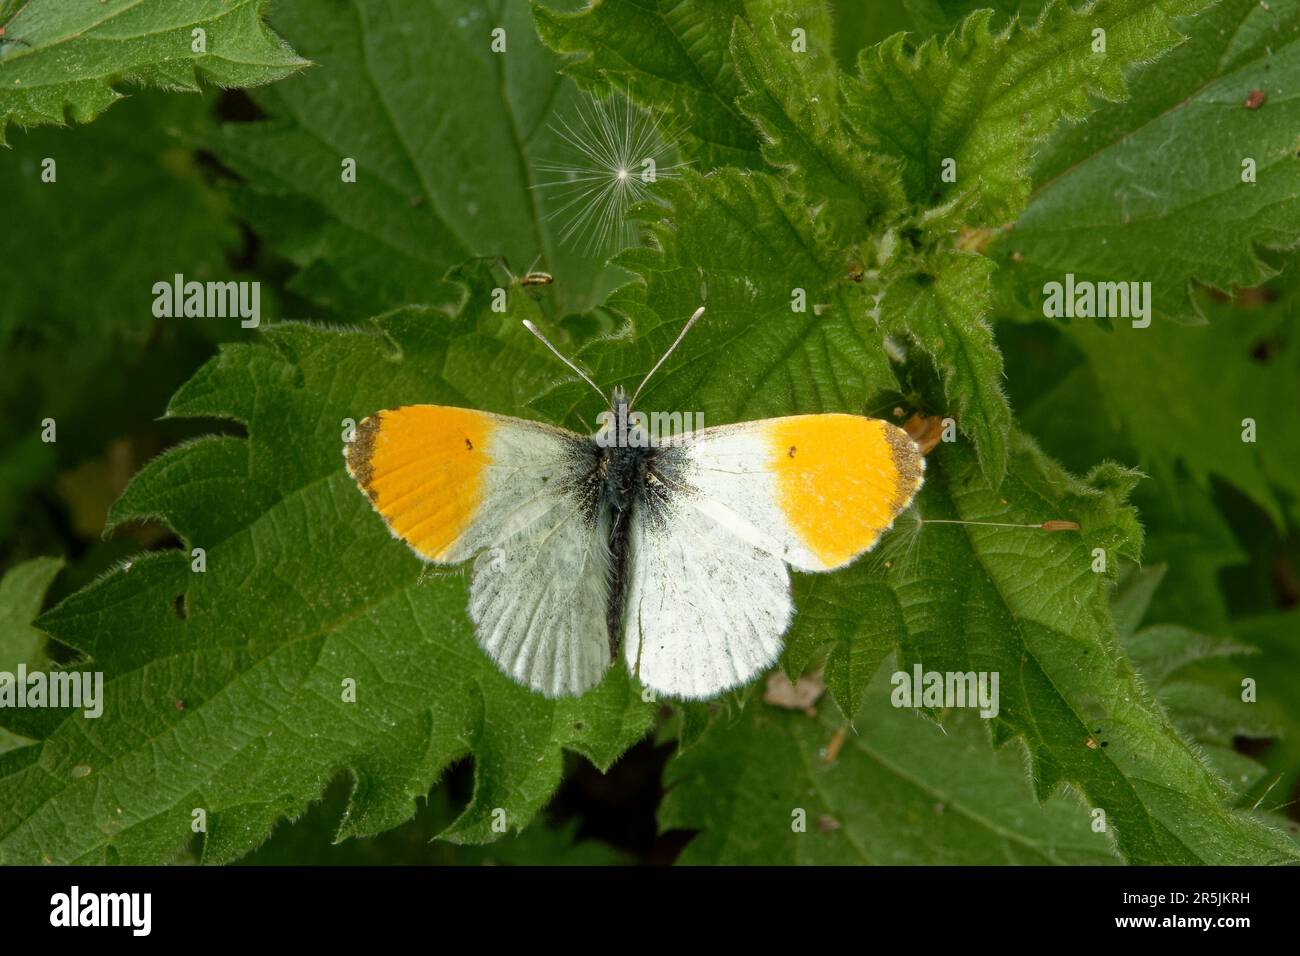 Pointe d'orange, cardamines d'Anthocharis (famille des Pieridae), un papillon et graines de dandelon sur la feuille d'ortie. Banque D'Images